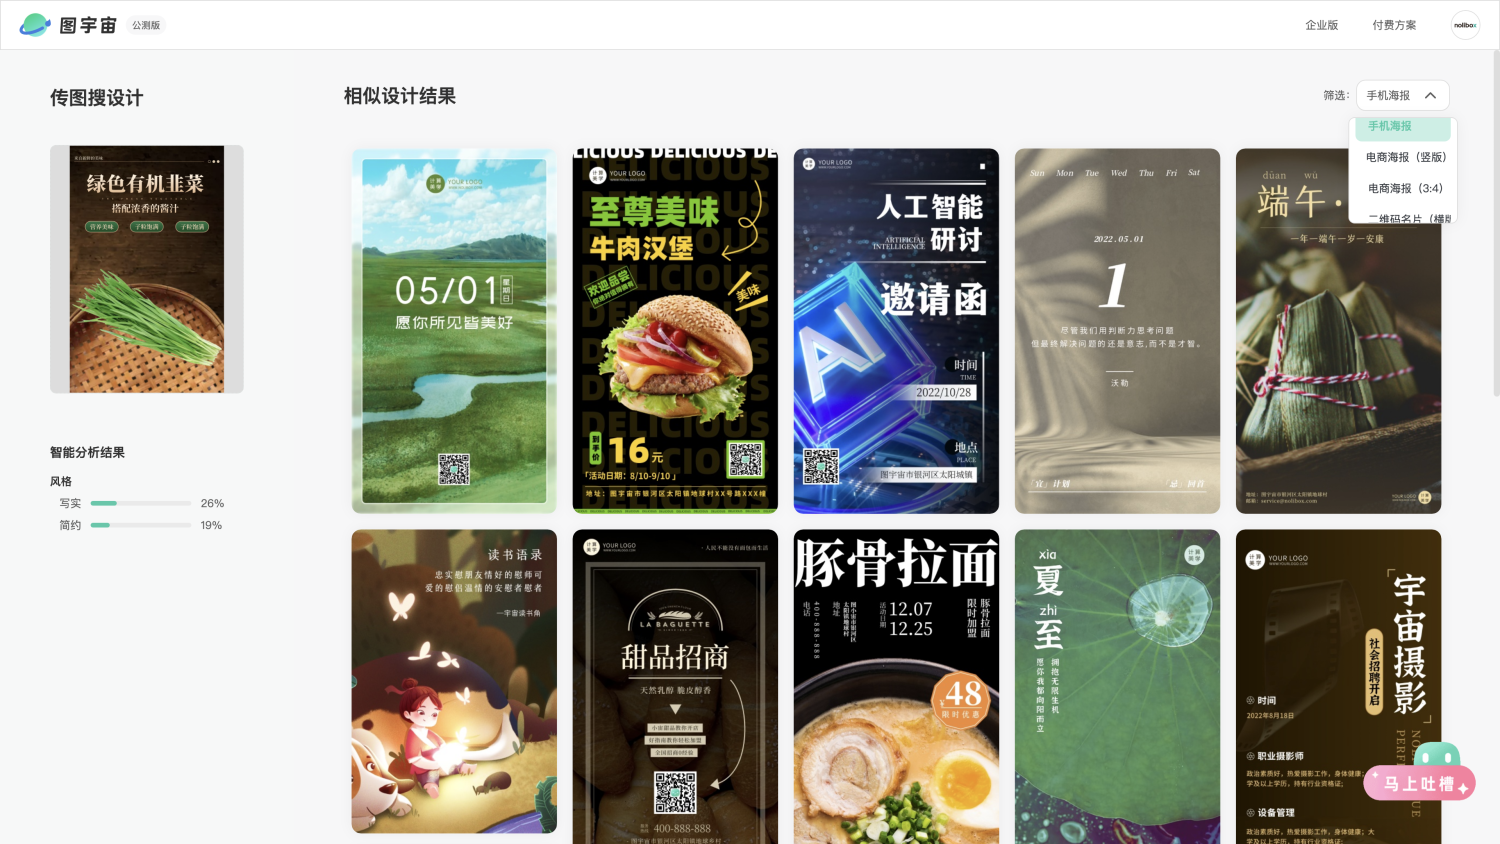 图宇宙-「韭菜」手机海报模板中心结果展示